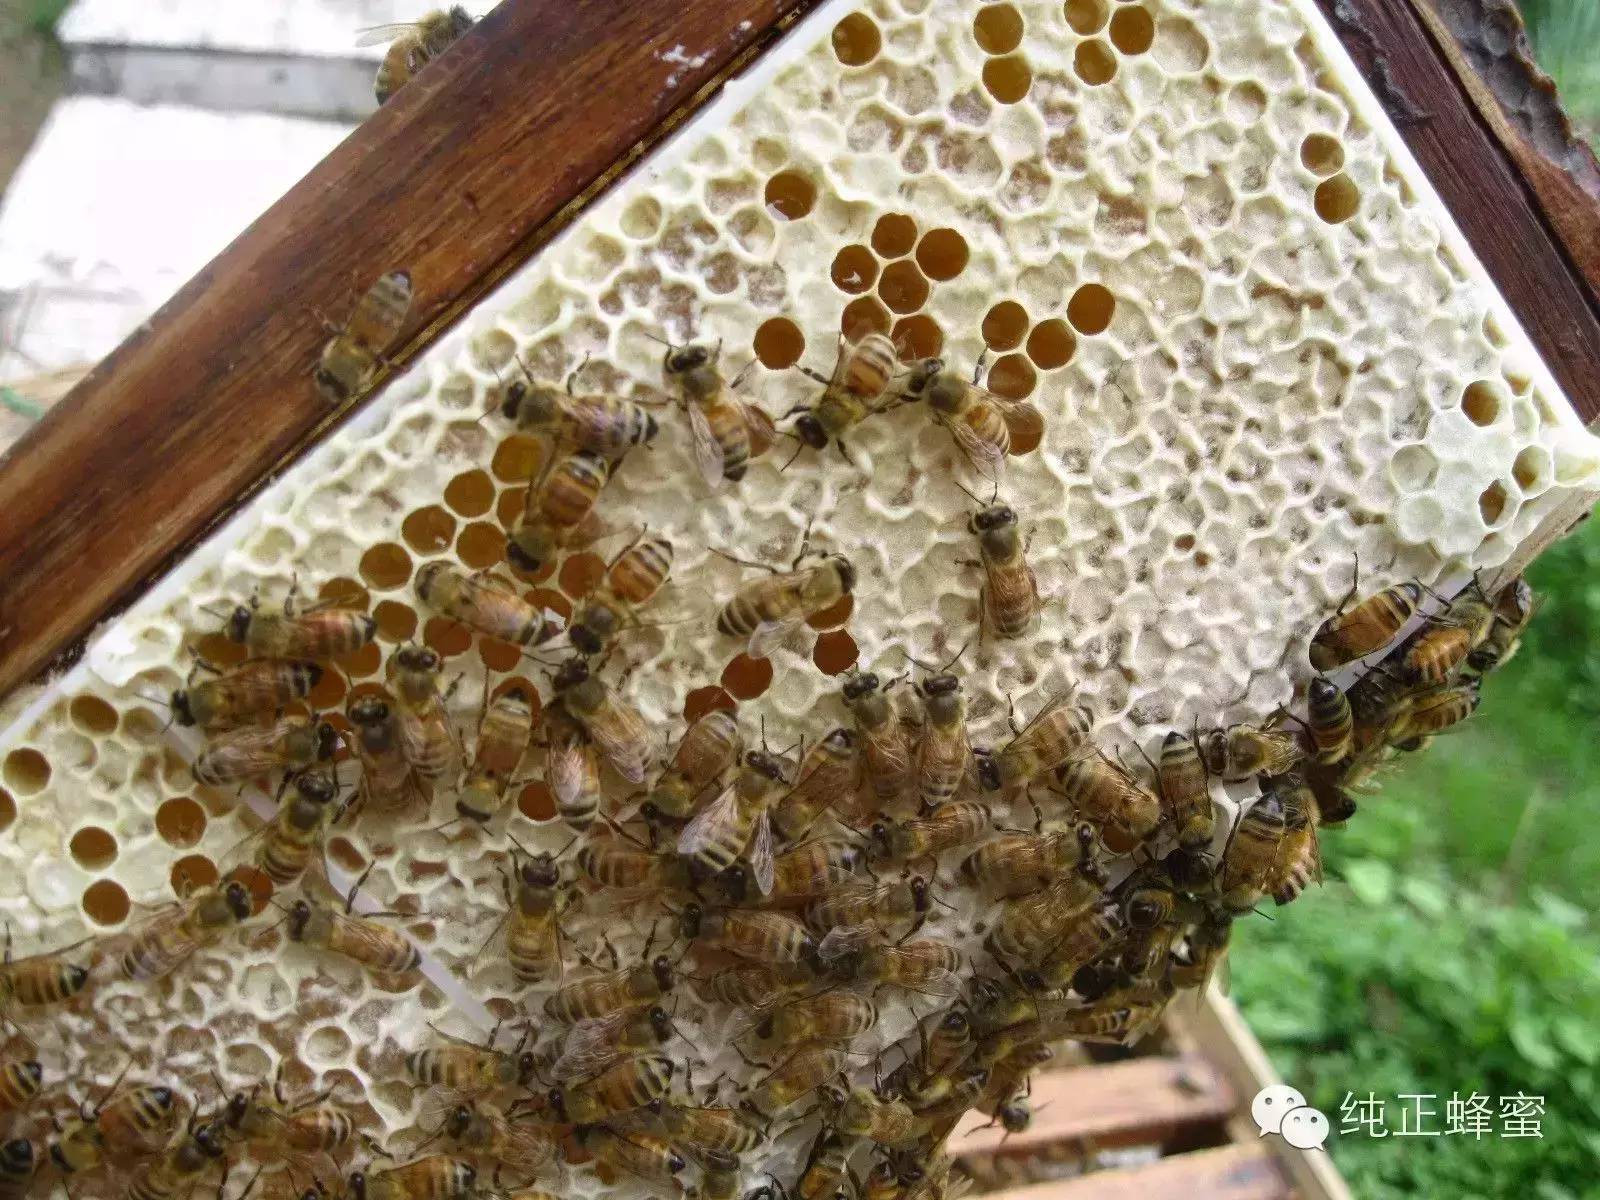 生殖系统 蜂蜜推荐 壁蜂 柠檬蜂蜜水的功效 醋加蜂蜜